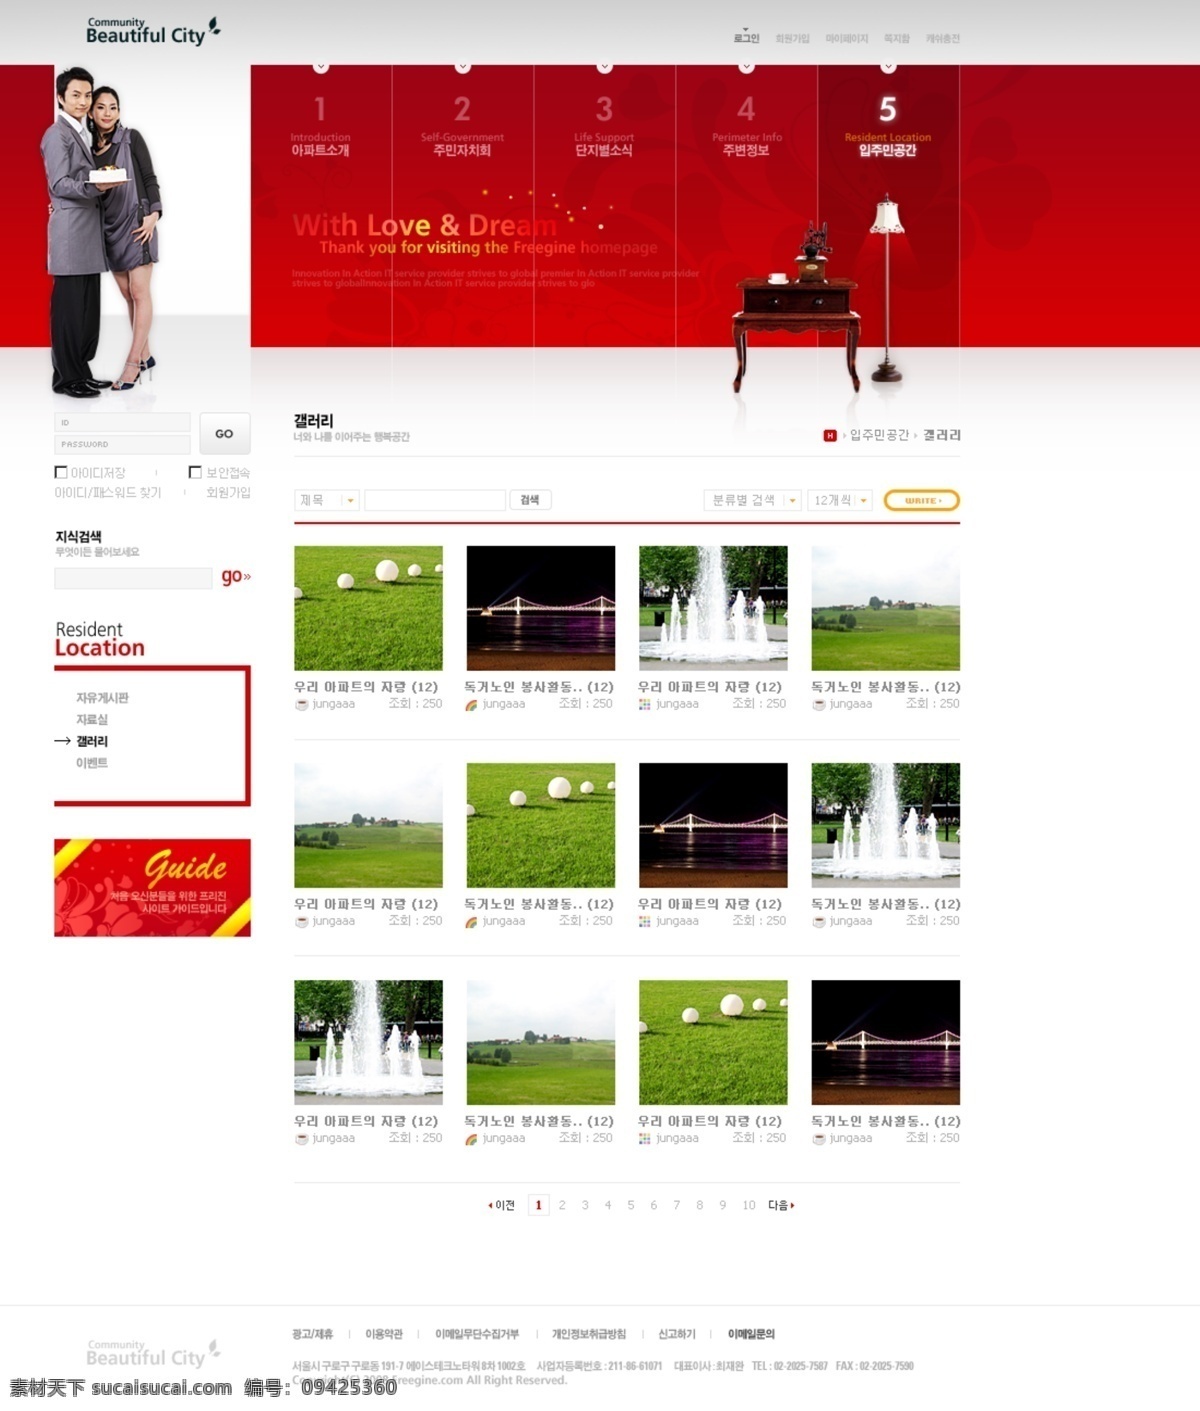 韩国 红娘 家居 公司 网页模板 炷锛揖庸就衬 白色